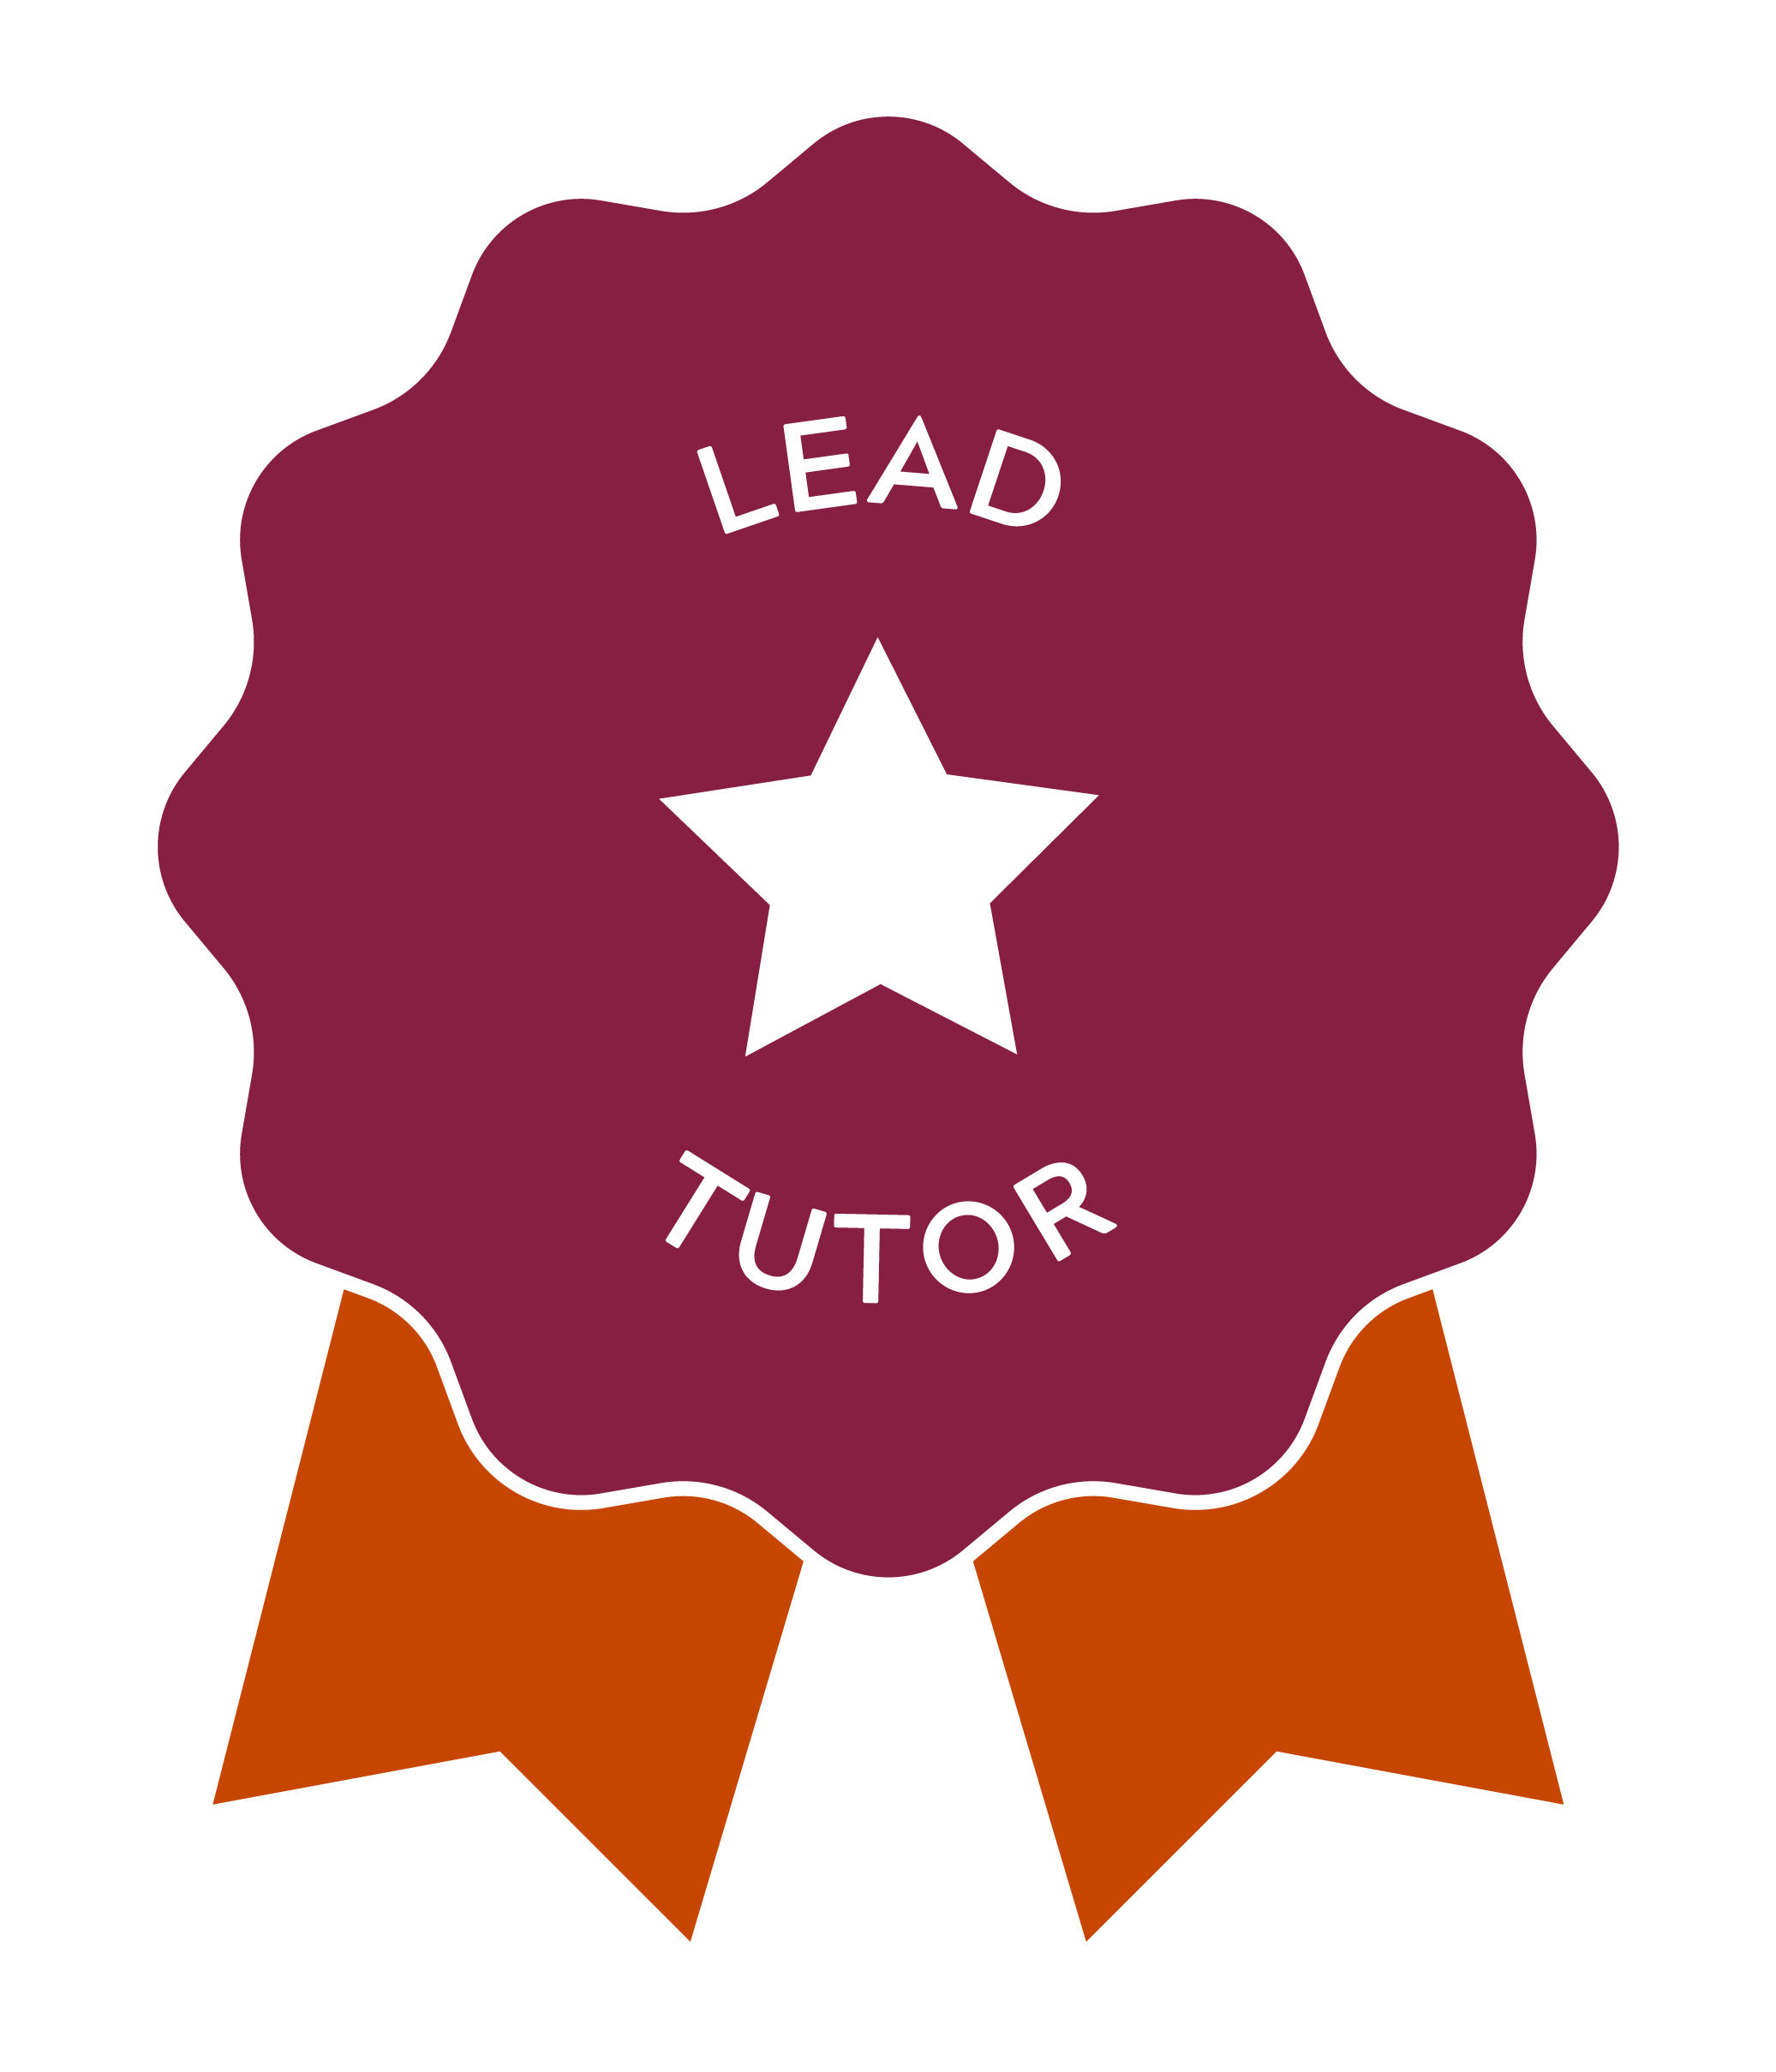 Lead Tutor